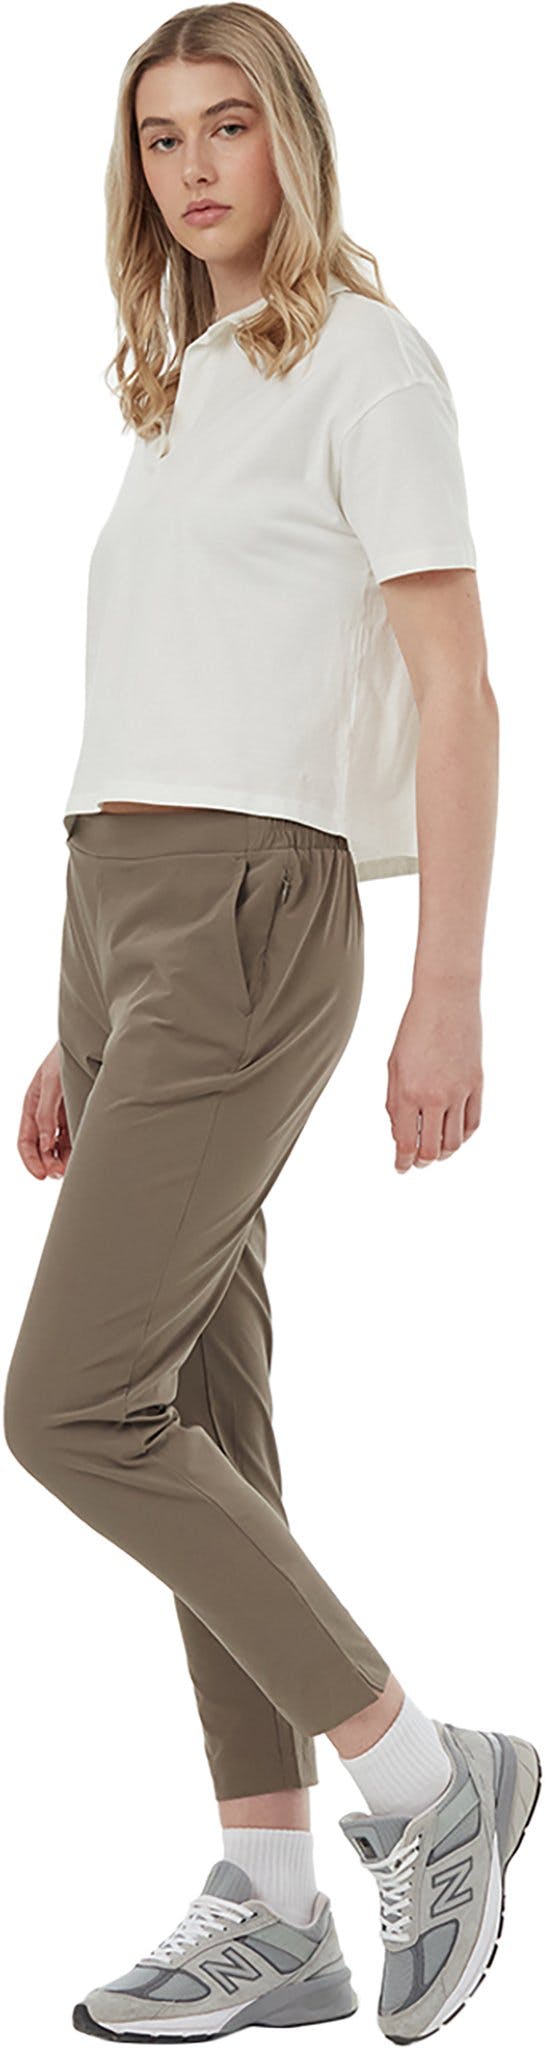 Numéro de l'image de la galerie de produits 4 pour le produit Pantalon léger InMotion - Femme